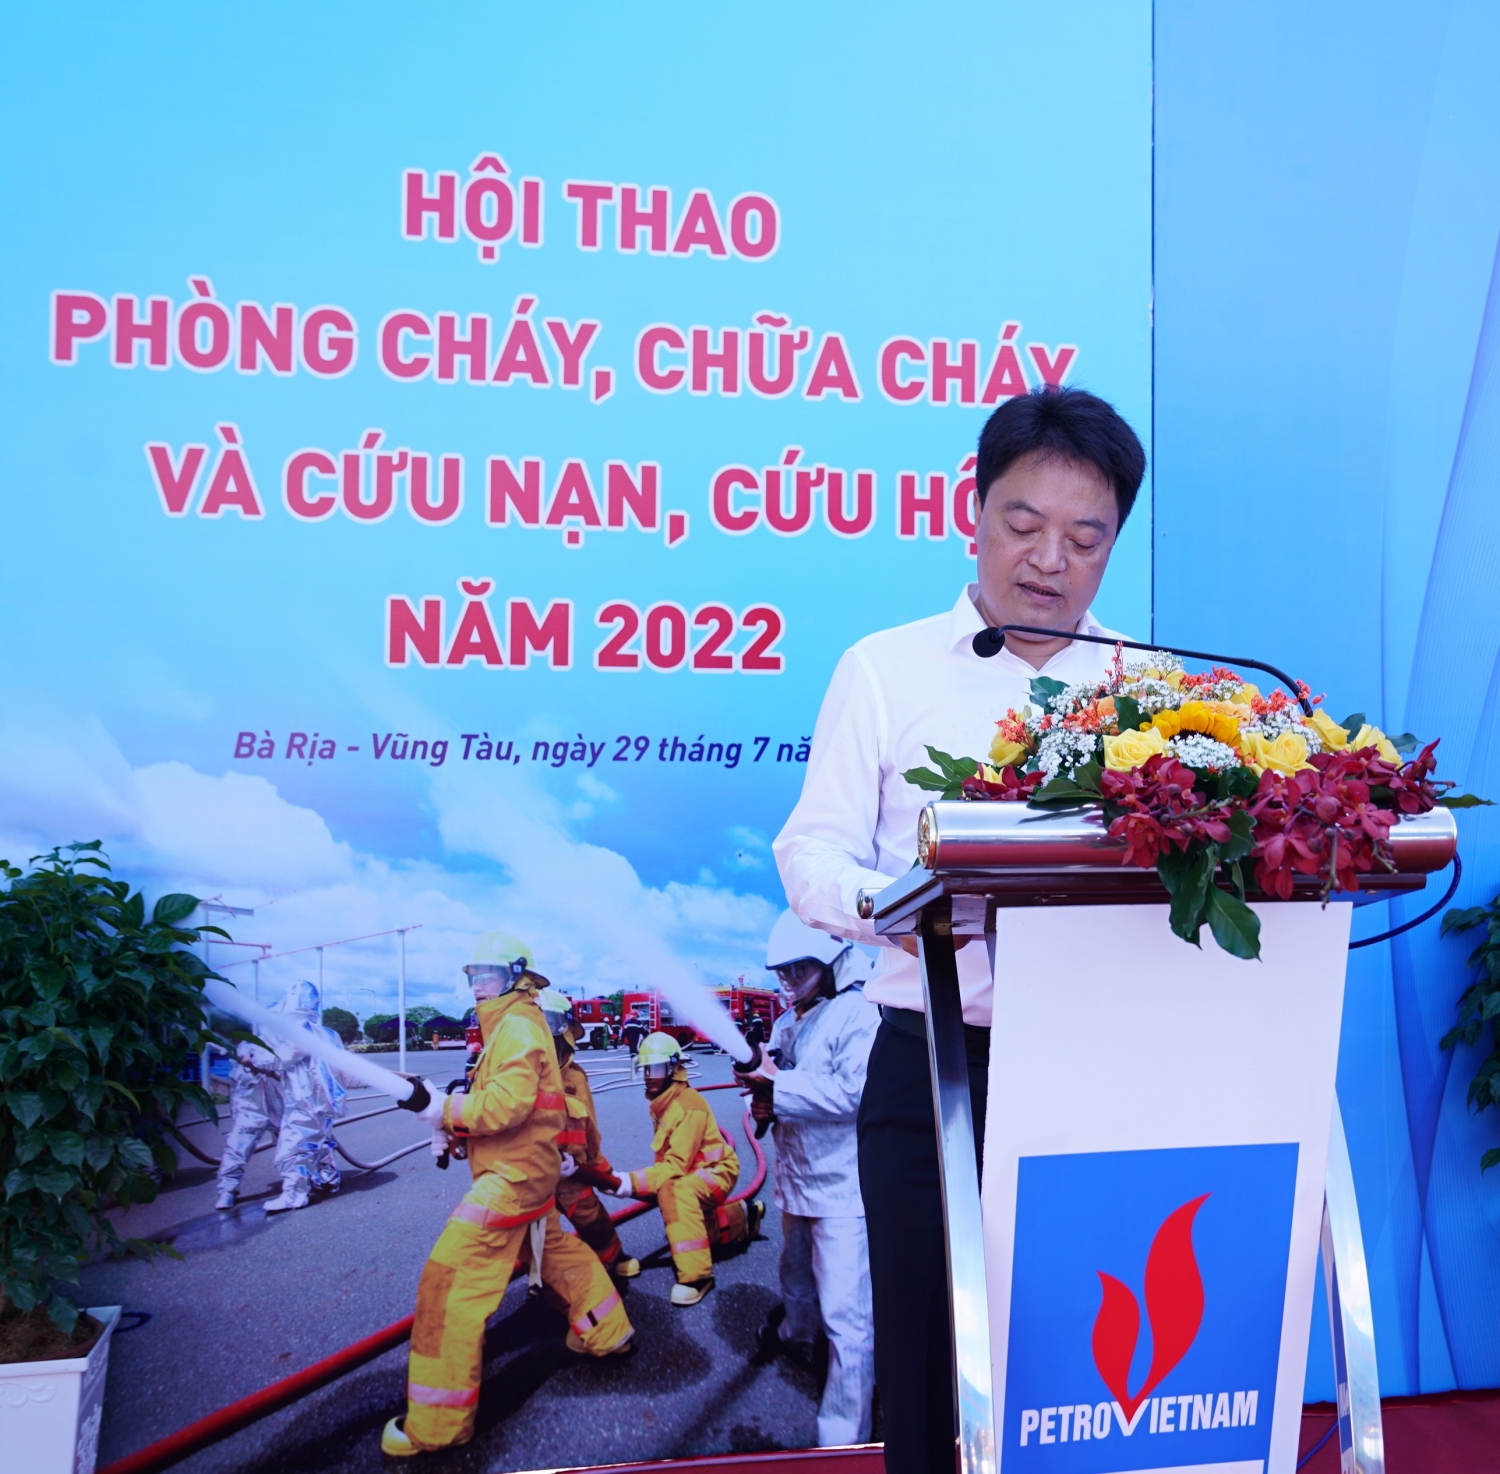 Ông Hoàng Văn Quang – Tổng giám đốc PV GAS phát biểu khai mạc Hội thao